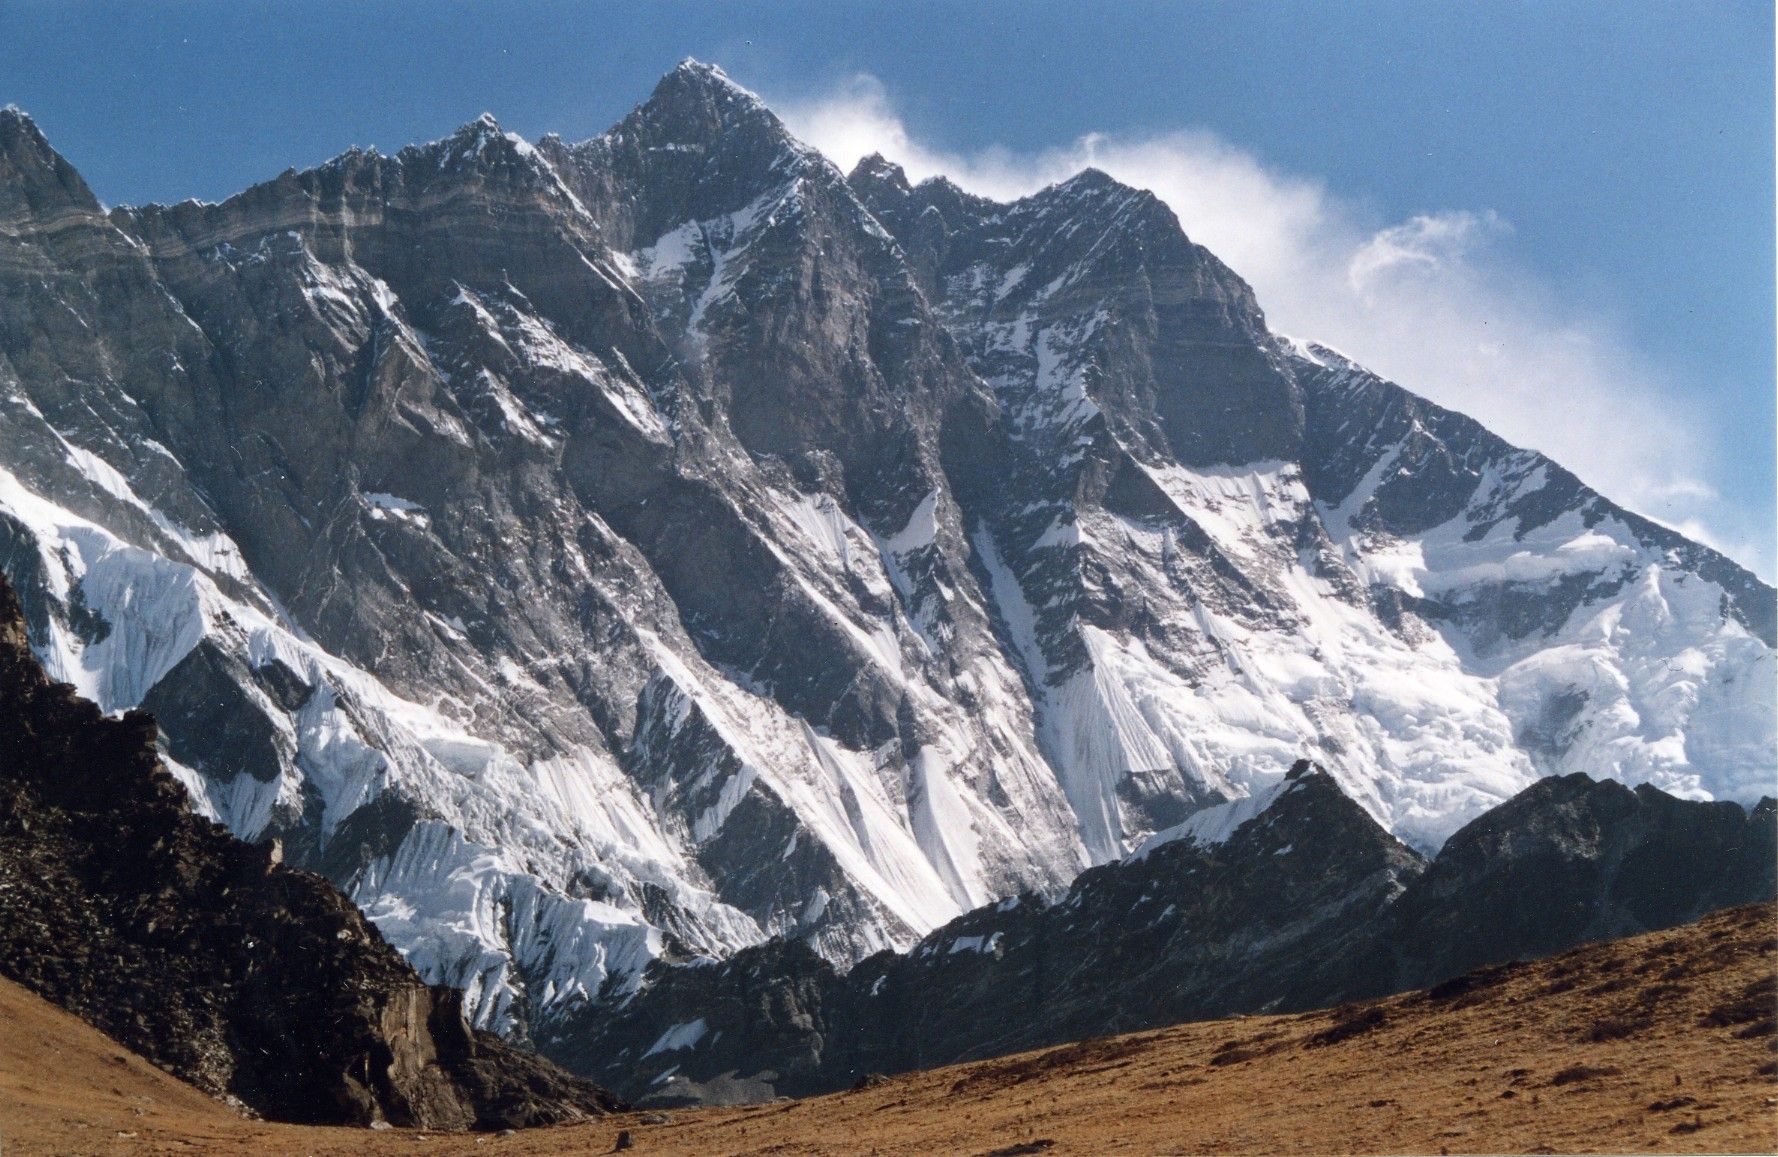 Лхоцзе (Lhotse, «Южная вершина») - высотой 8516 м, четвертый по высоте восьмитысячник мира